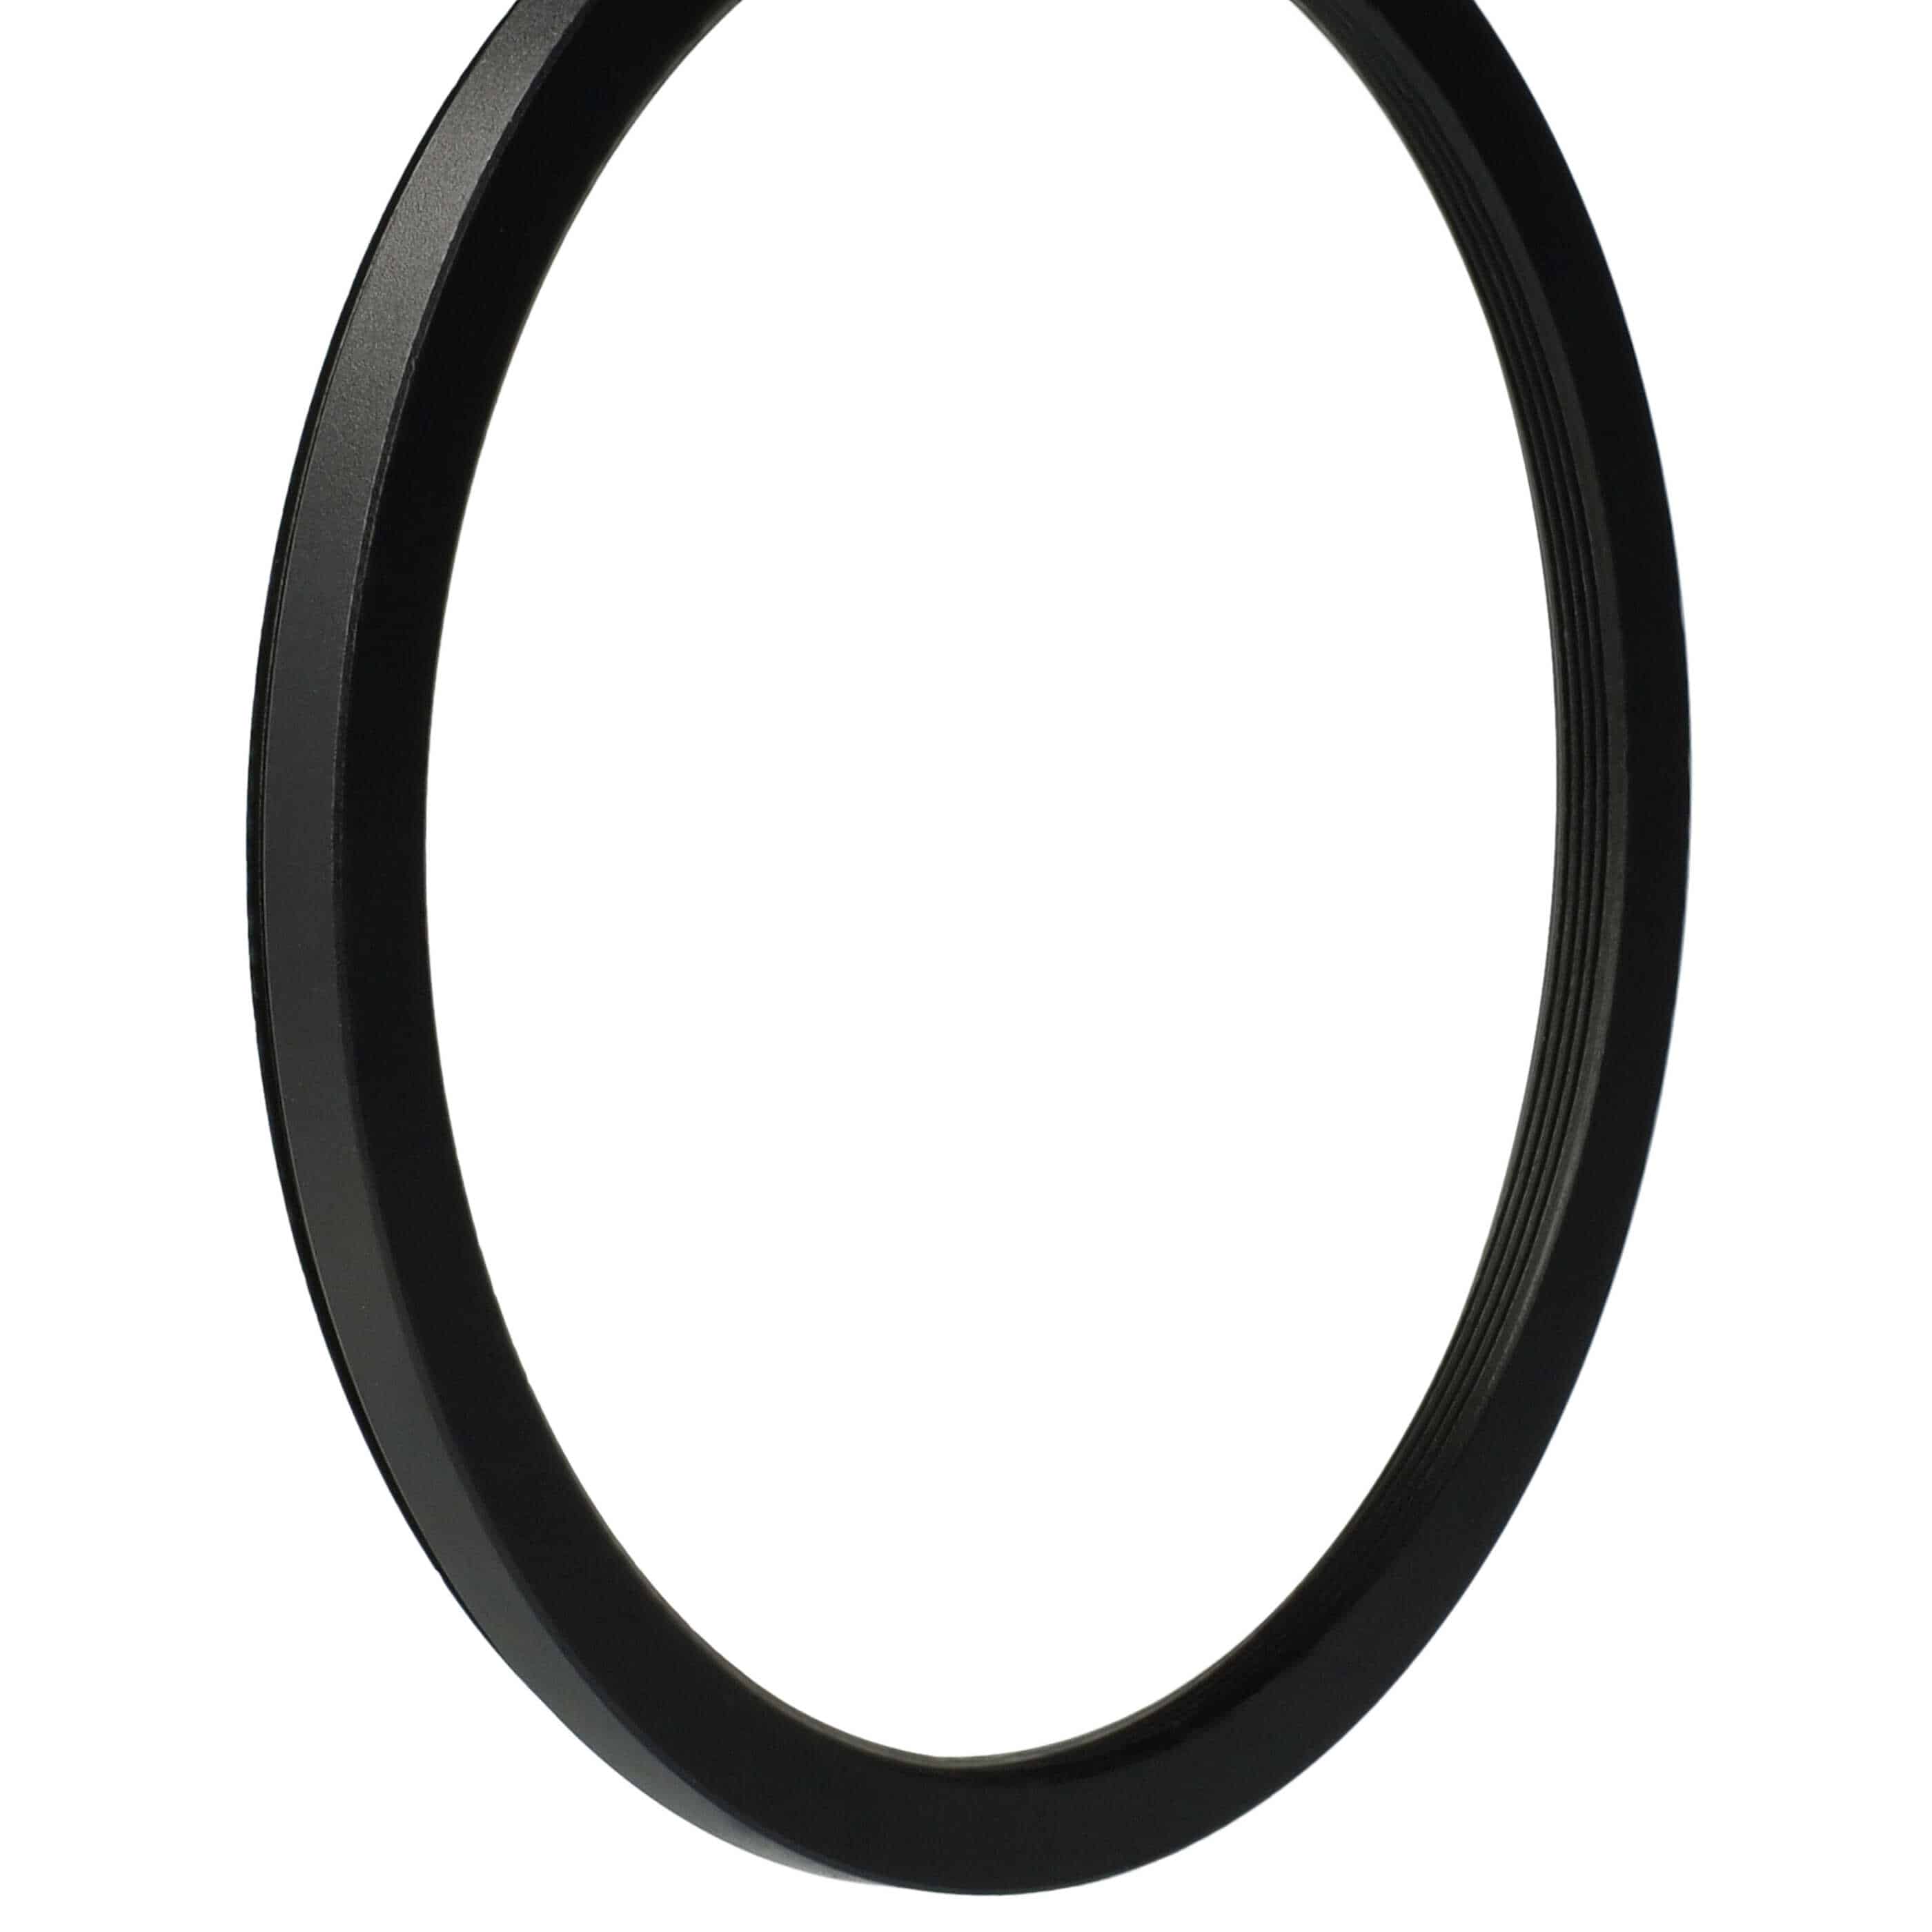 Redukcja filtrowa adapter Step-Down 95 mm - 86 mm pasująca do obiektywu - metal, czarny